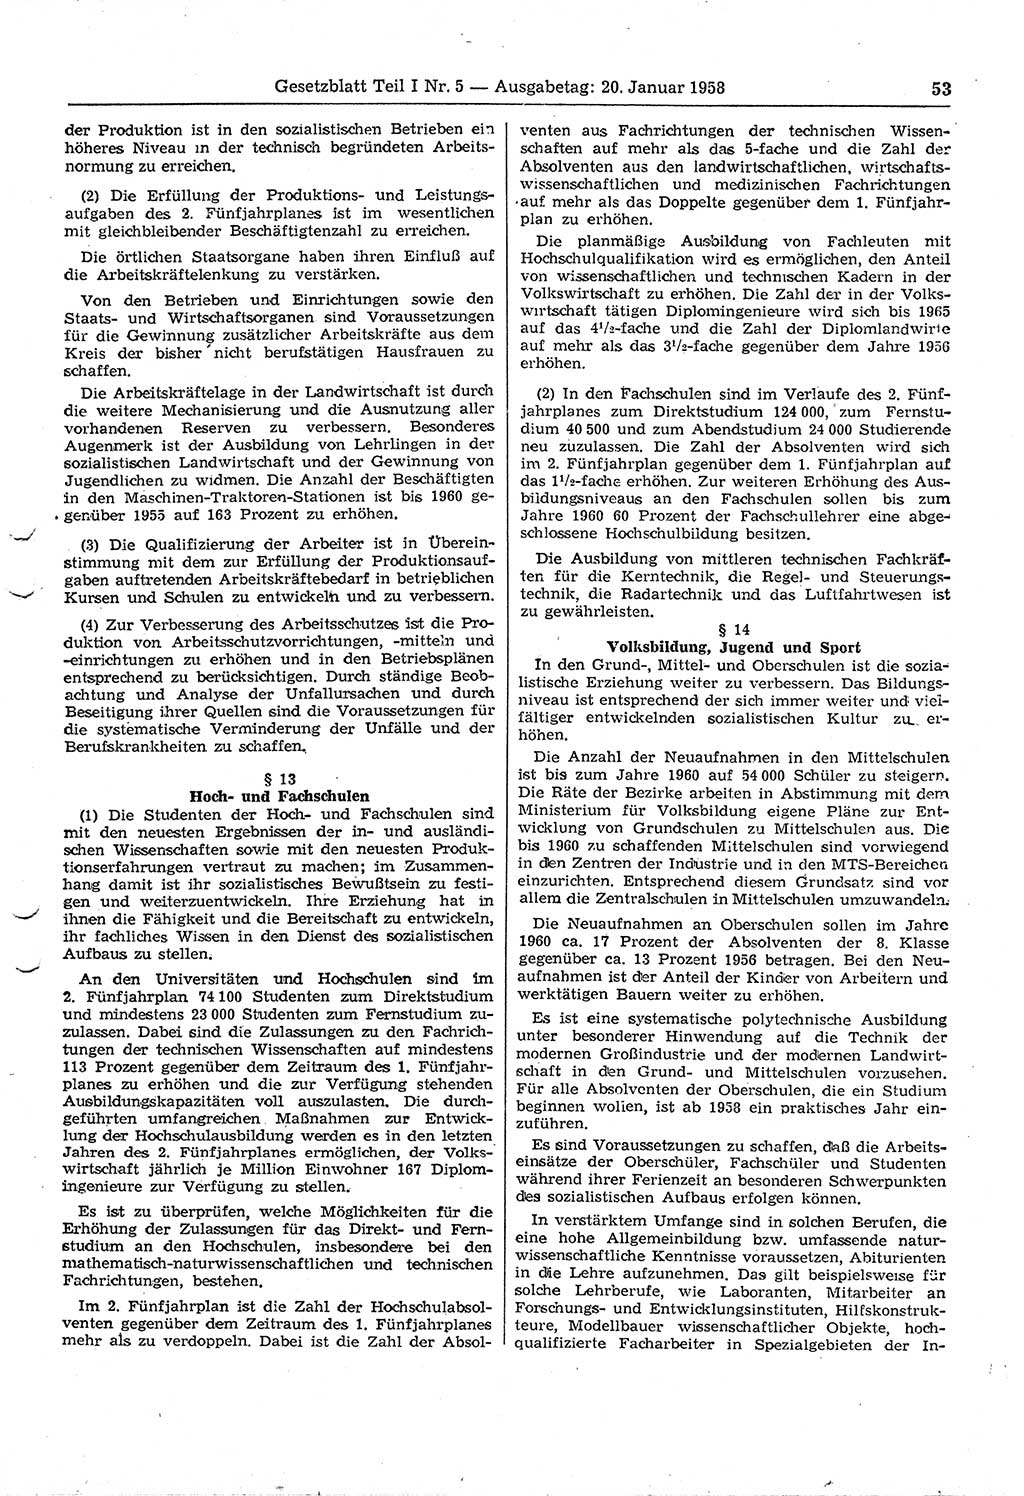 Gesetzblatt (GBl.) der Deutschen Demokratischen Republik (DDR) Teil Ⅰ 1958, Seite 53 (GBl. DDR Ⅰ 1958, S. 53)